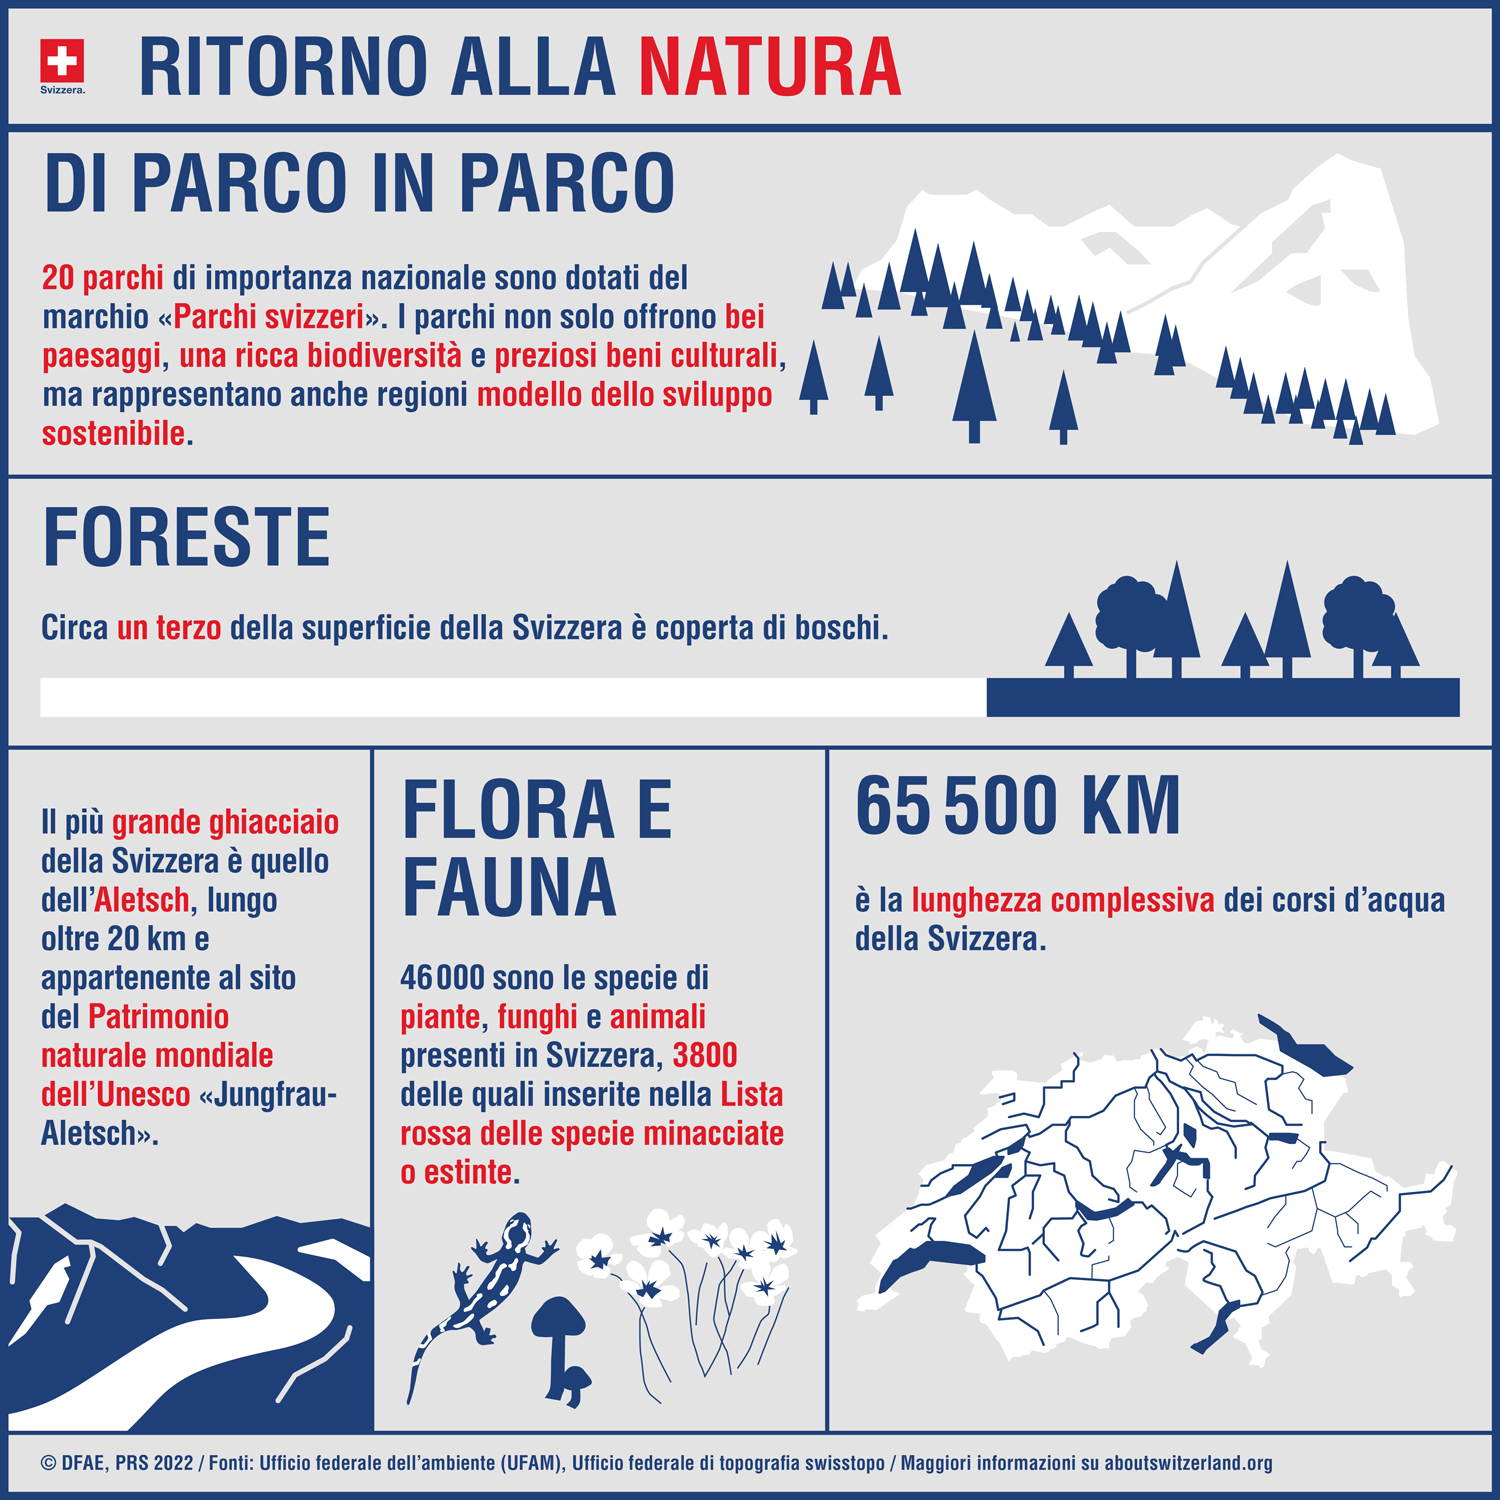  Infografica sulla Svizzera. 20 parchi nazionali. Un terzo del territorio svizzero è ricoperto da foreste. Il ghiacciaio dell’Aletsch è iscritto nella lista del Patrimonio mondiale dell’UNESCO. 